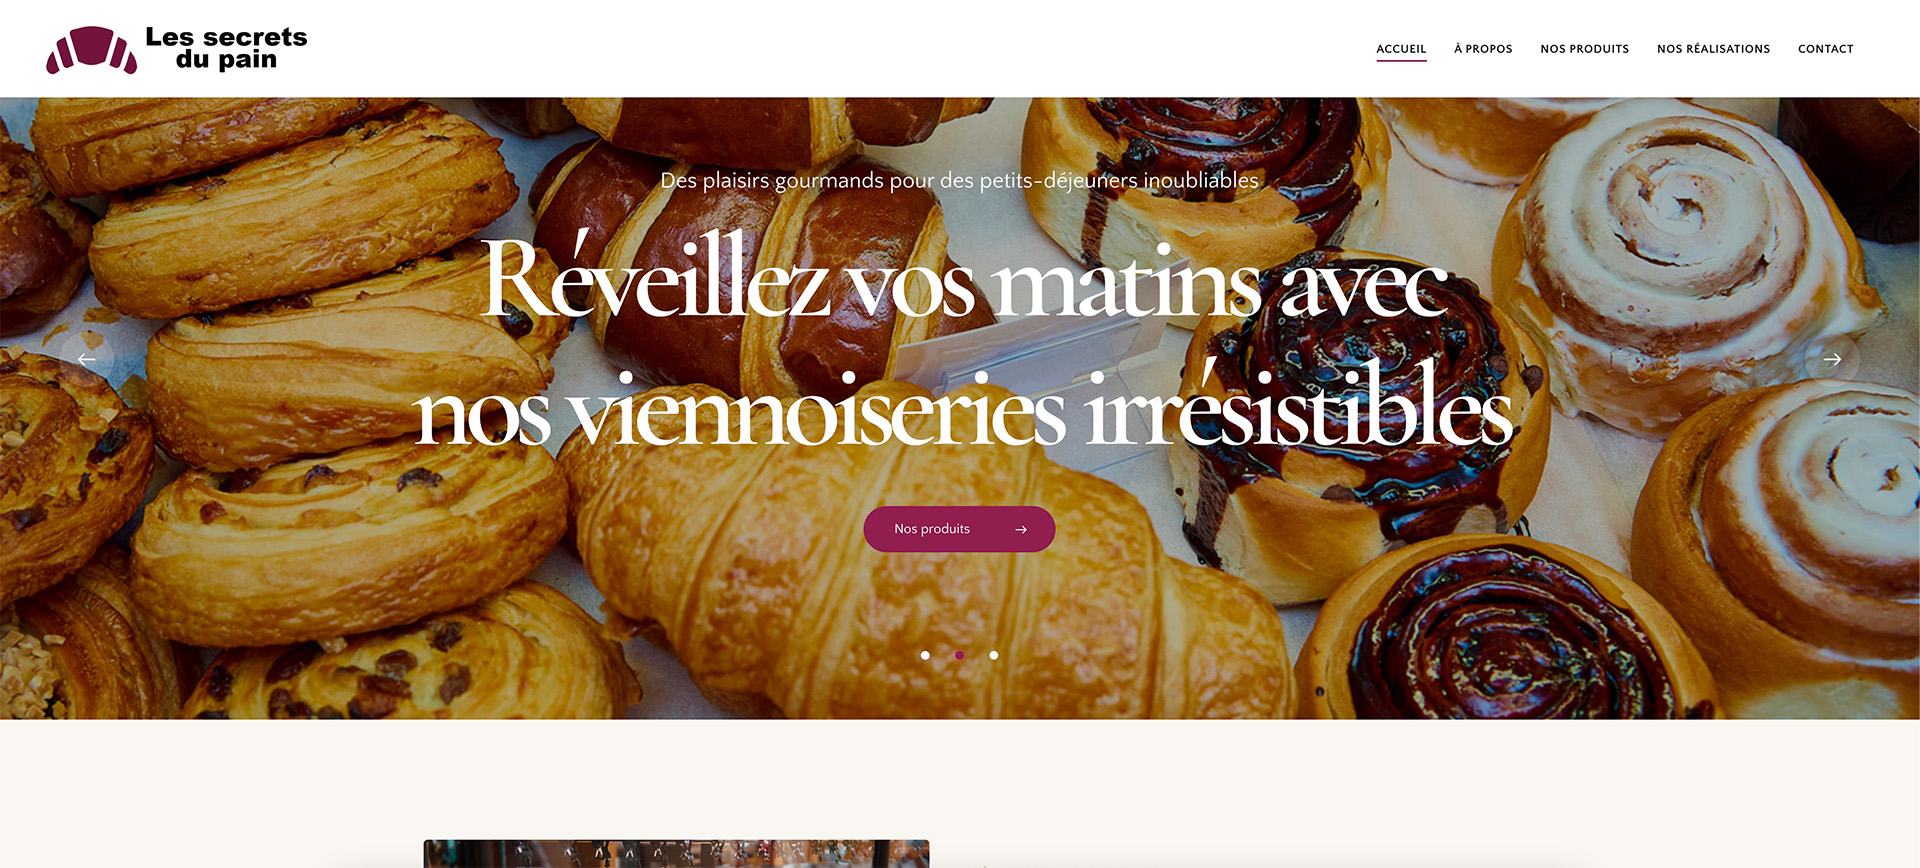 Conception de site web sur le thème 'Boulangerie', parfaitement adaptée aux boulangeries et pâtisseries.